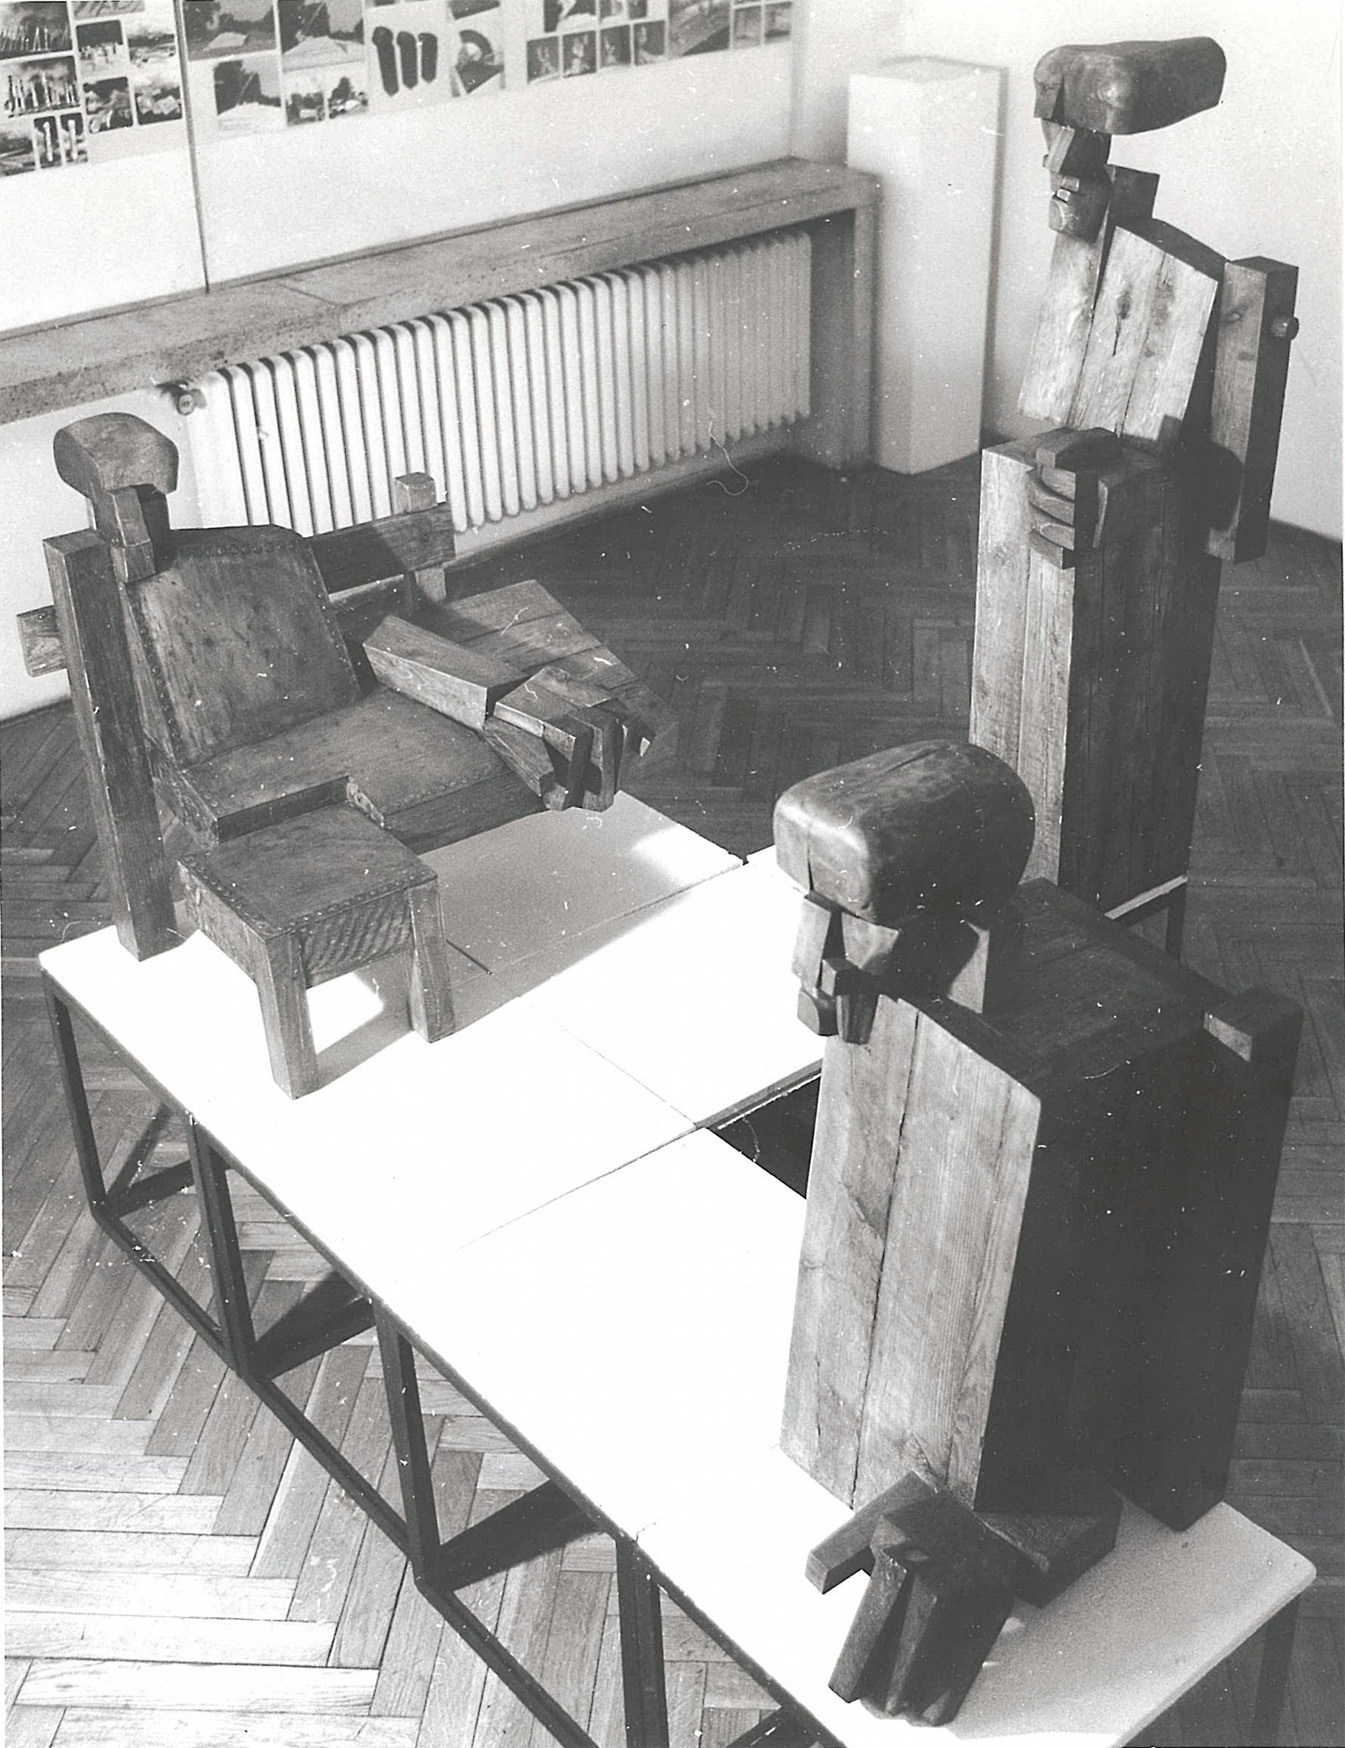 Komplet gabinetowy, 1893 rok, drewno klejone; wystawa indywidualna rzeźby w Galerii "Pryzmat" - ZPAP Kraków